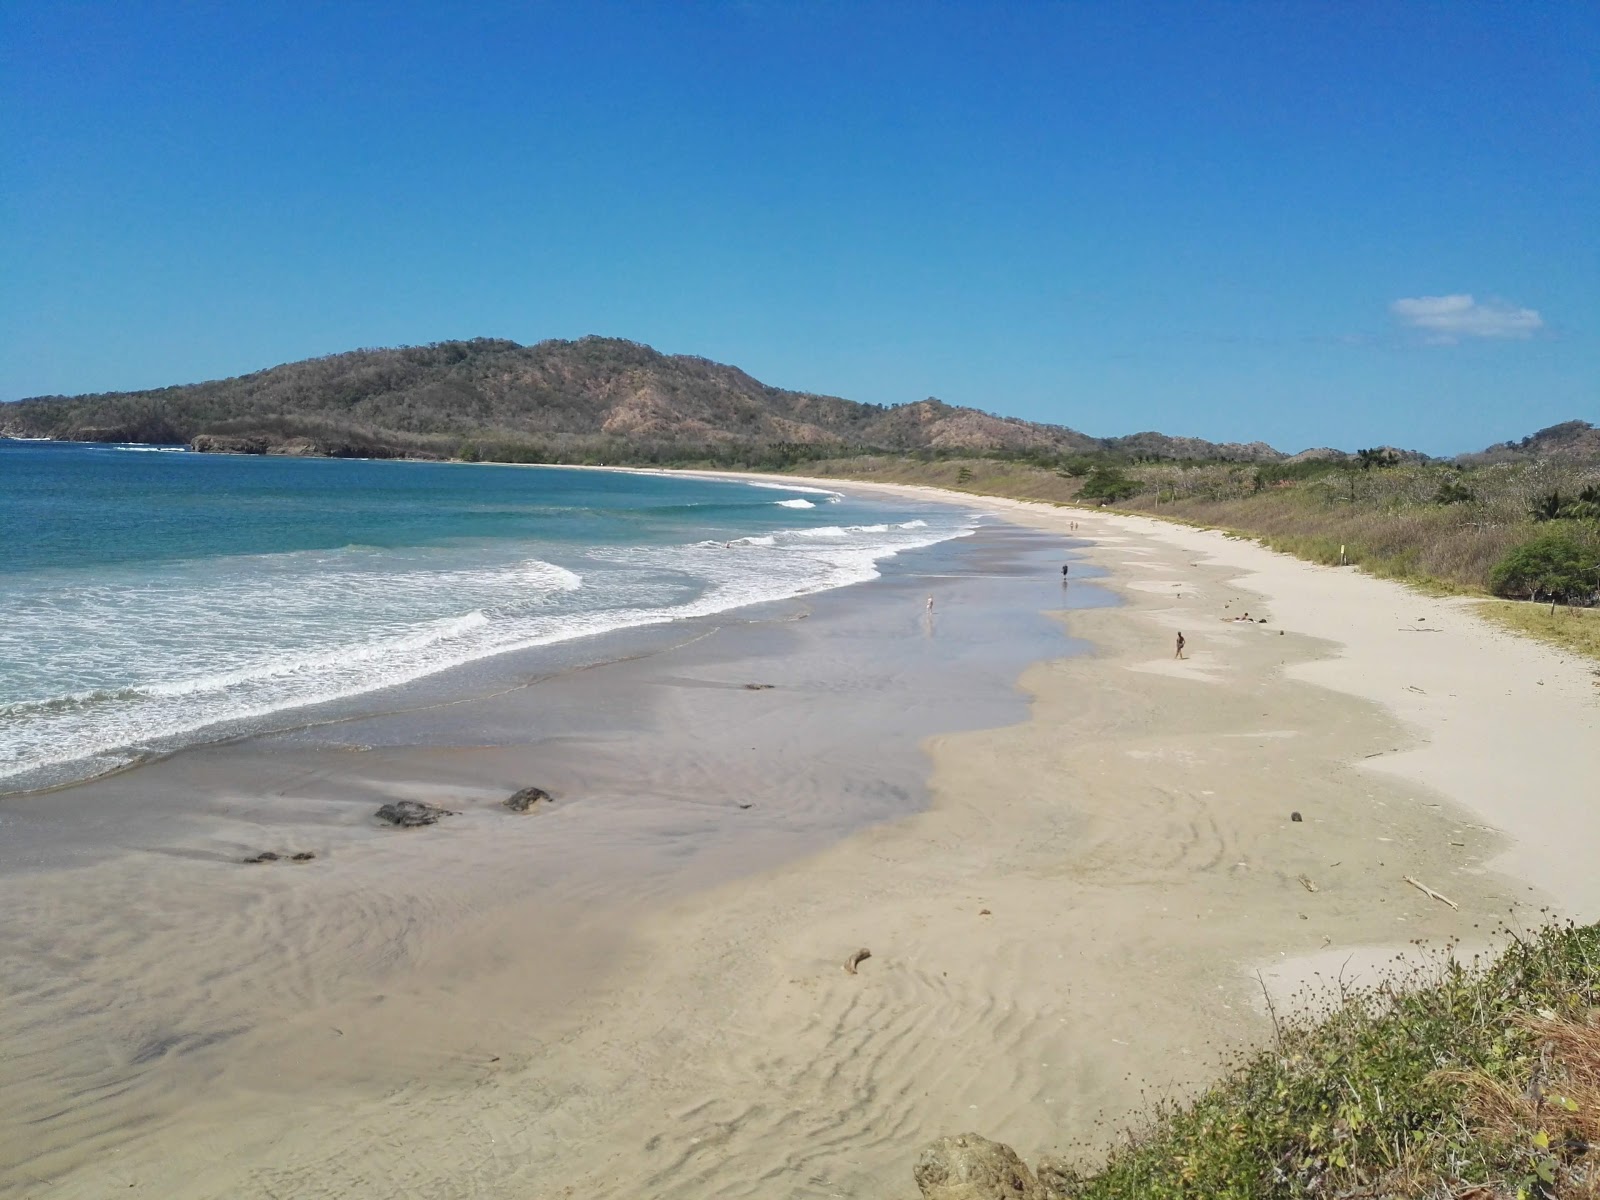 Zdjęcie Playa Ventanas - popularne miejsce wśród znawców relaksu